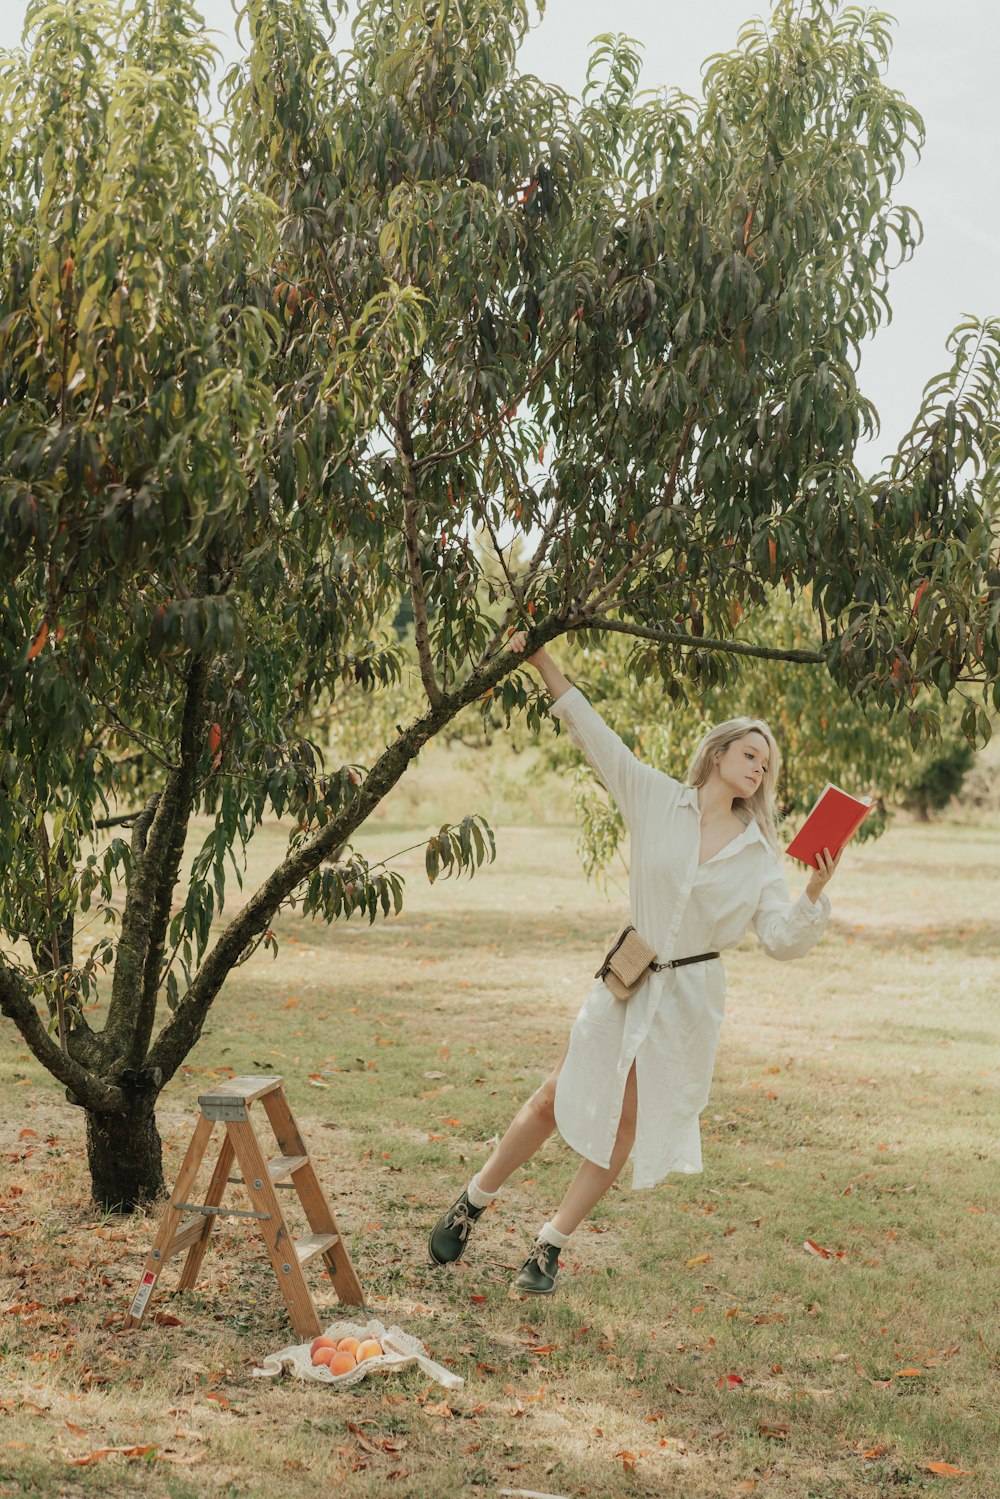 Une femme en robe blanche se balançant sur un arbre